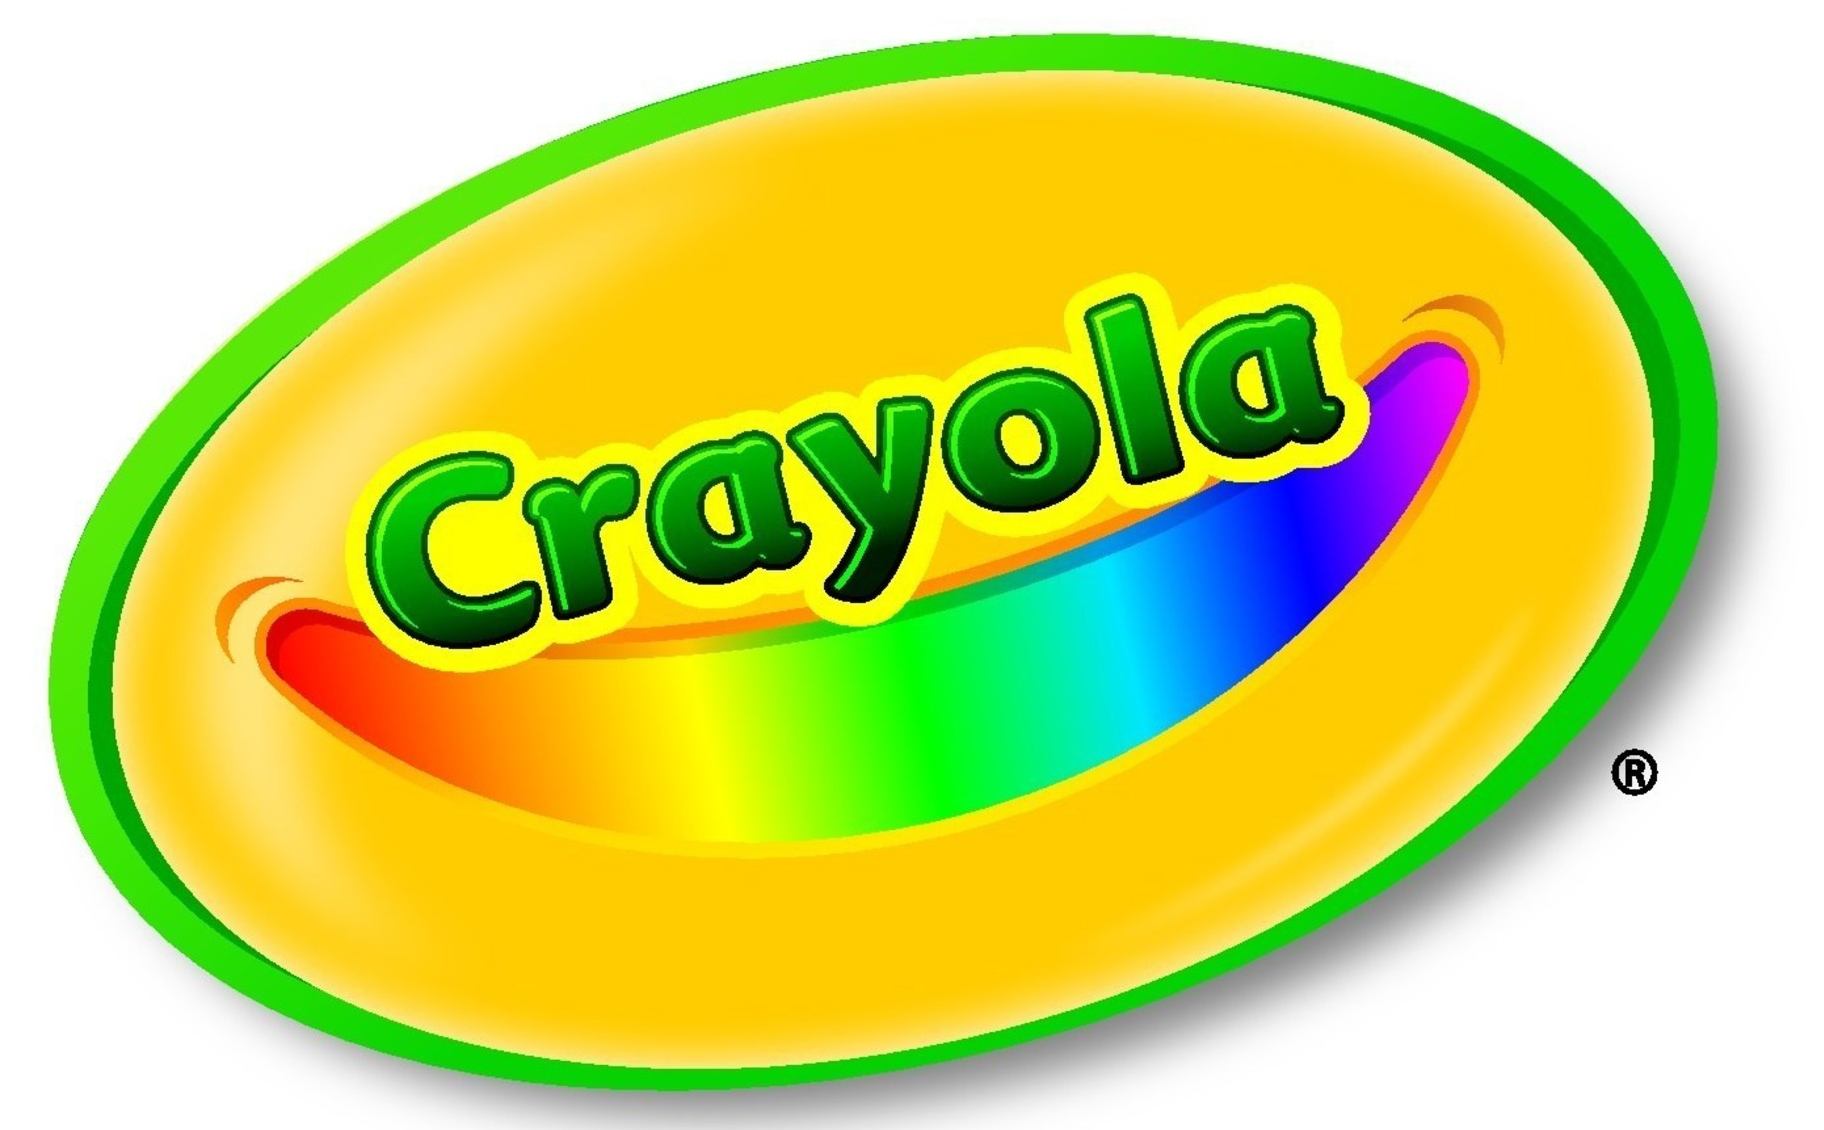 Crayola 140-Piece Coloring Set $19.99